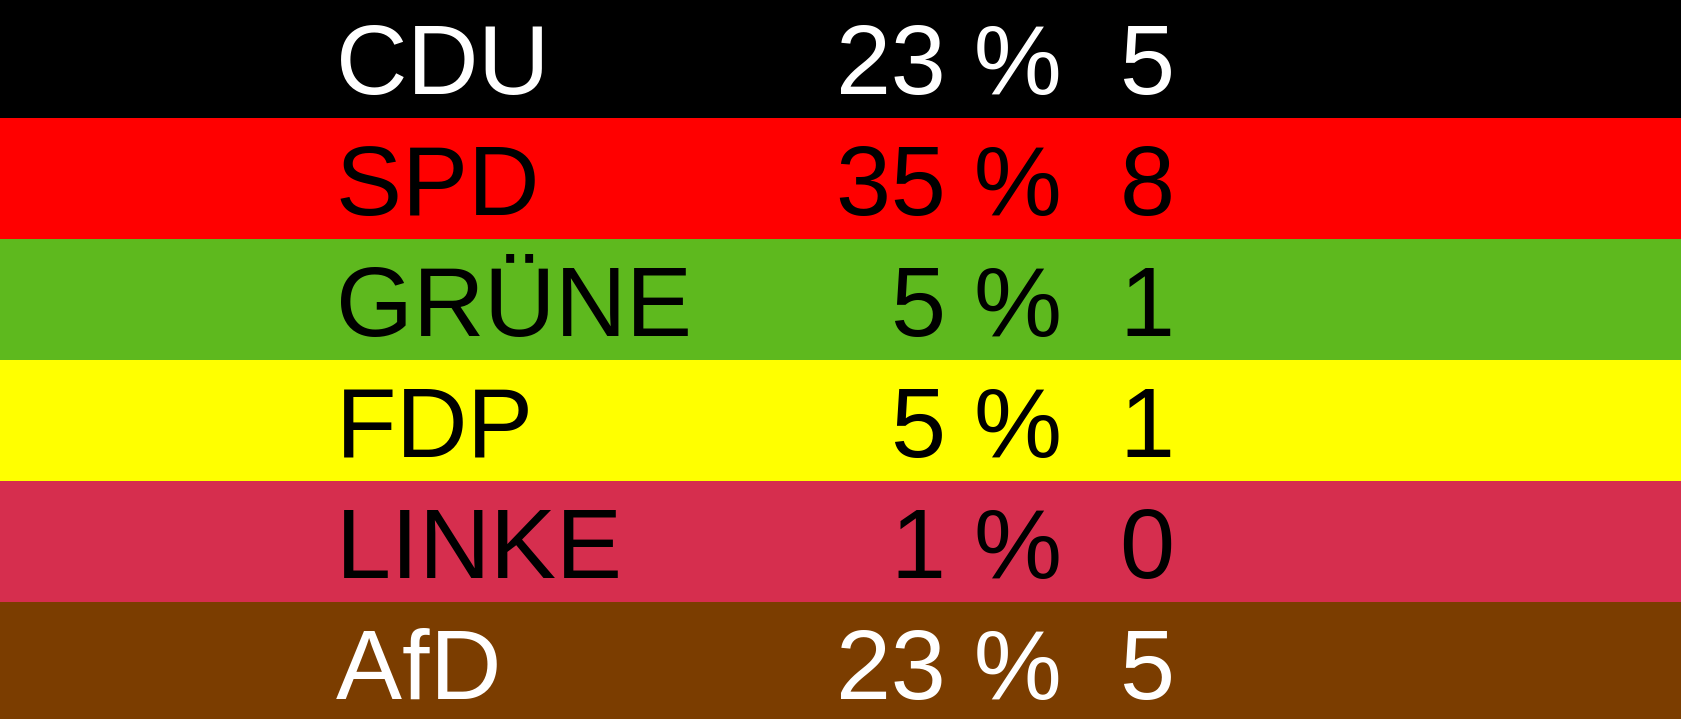 Eine Übersicht der Sitzverteilung des Bezirksrates Dudweiler, wenn am kommenden Sonntag Kommunalwahl wäre. CDU 23 % 5 SPD 35 % 8 GRÜNE 5 % 1 FDP 5 % 1 LINKE 1 % 0 AfD 23 % 5